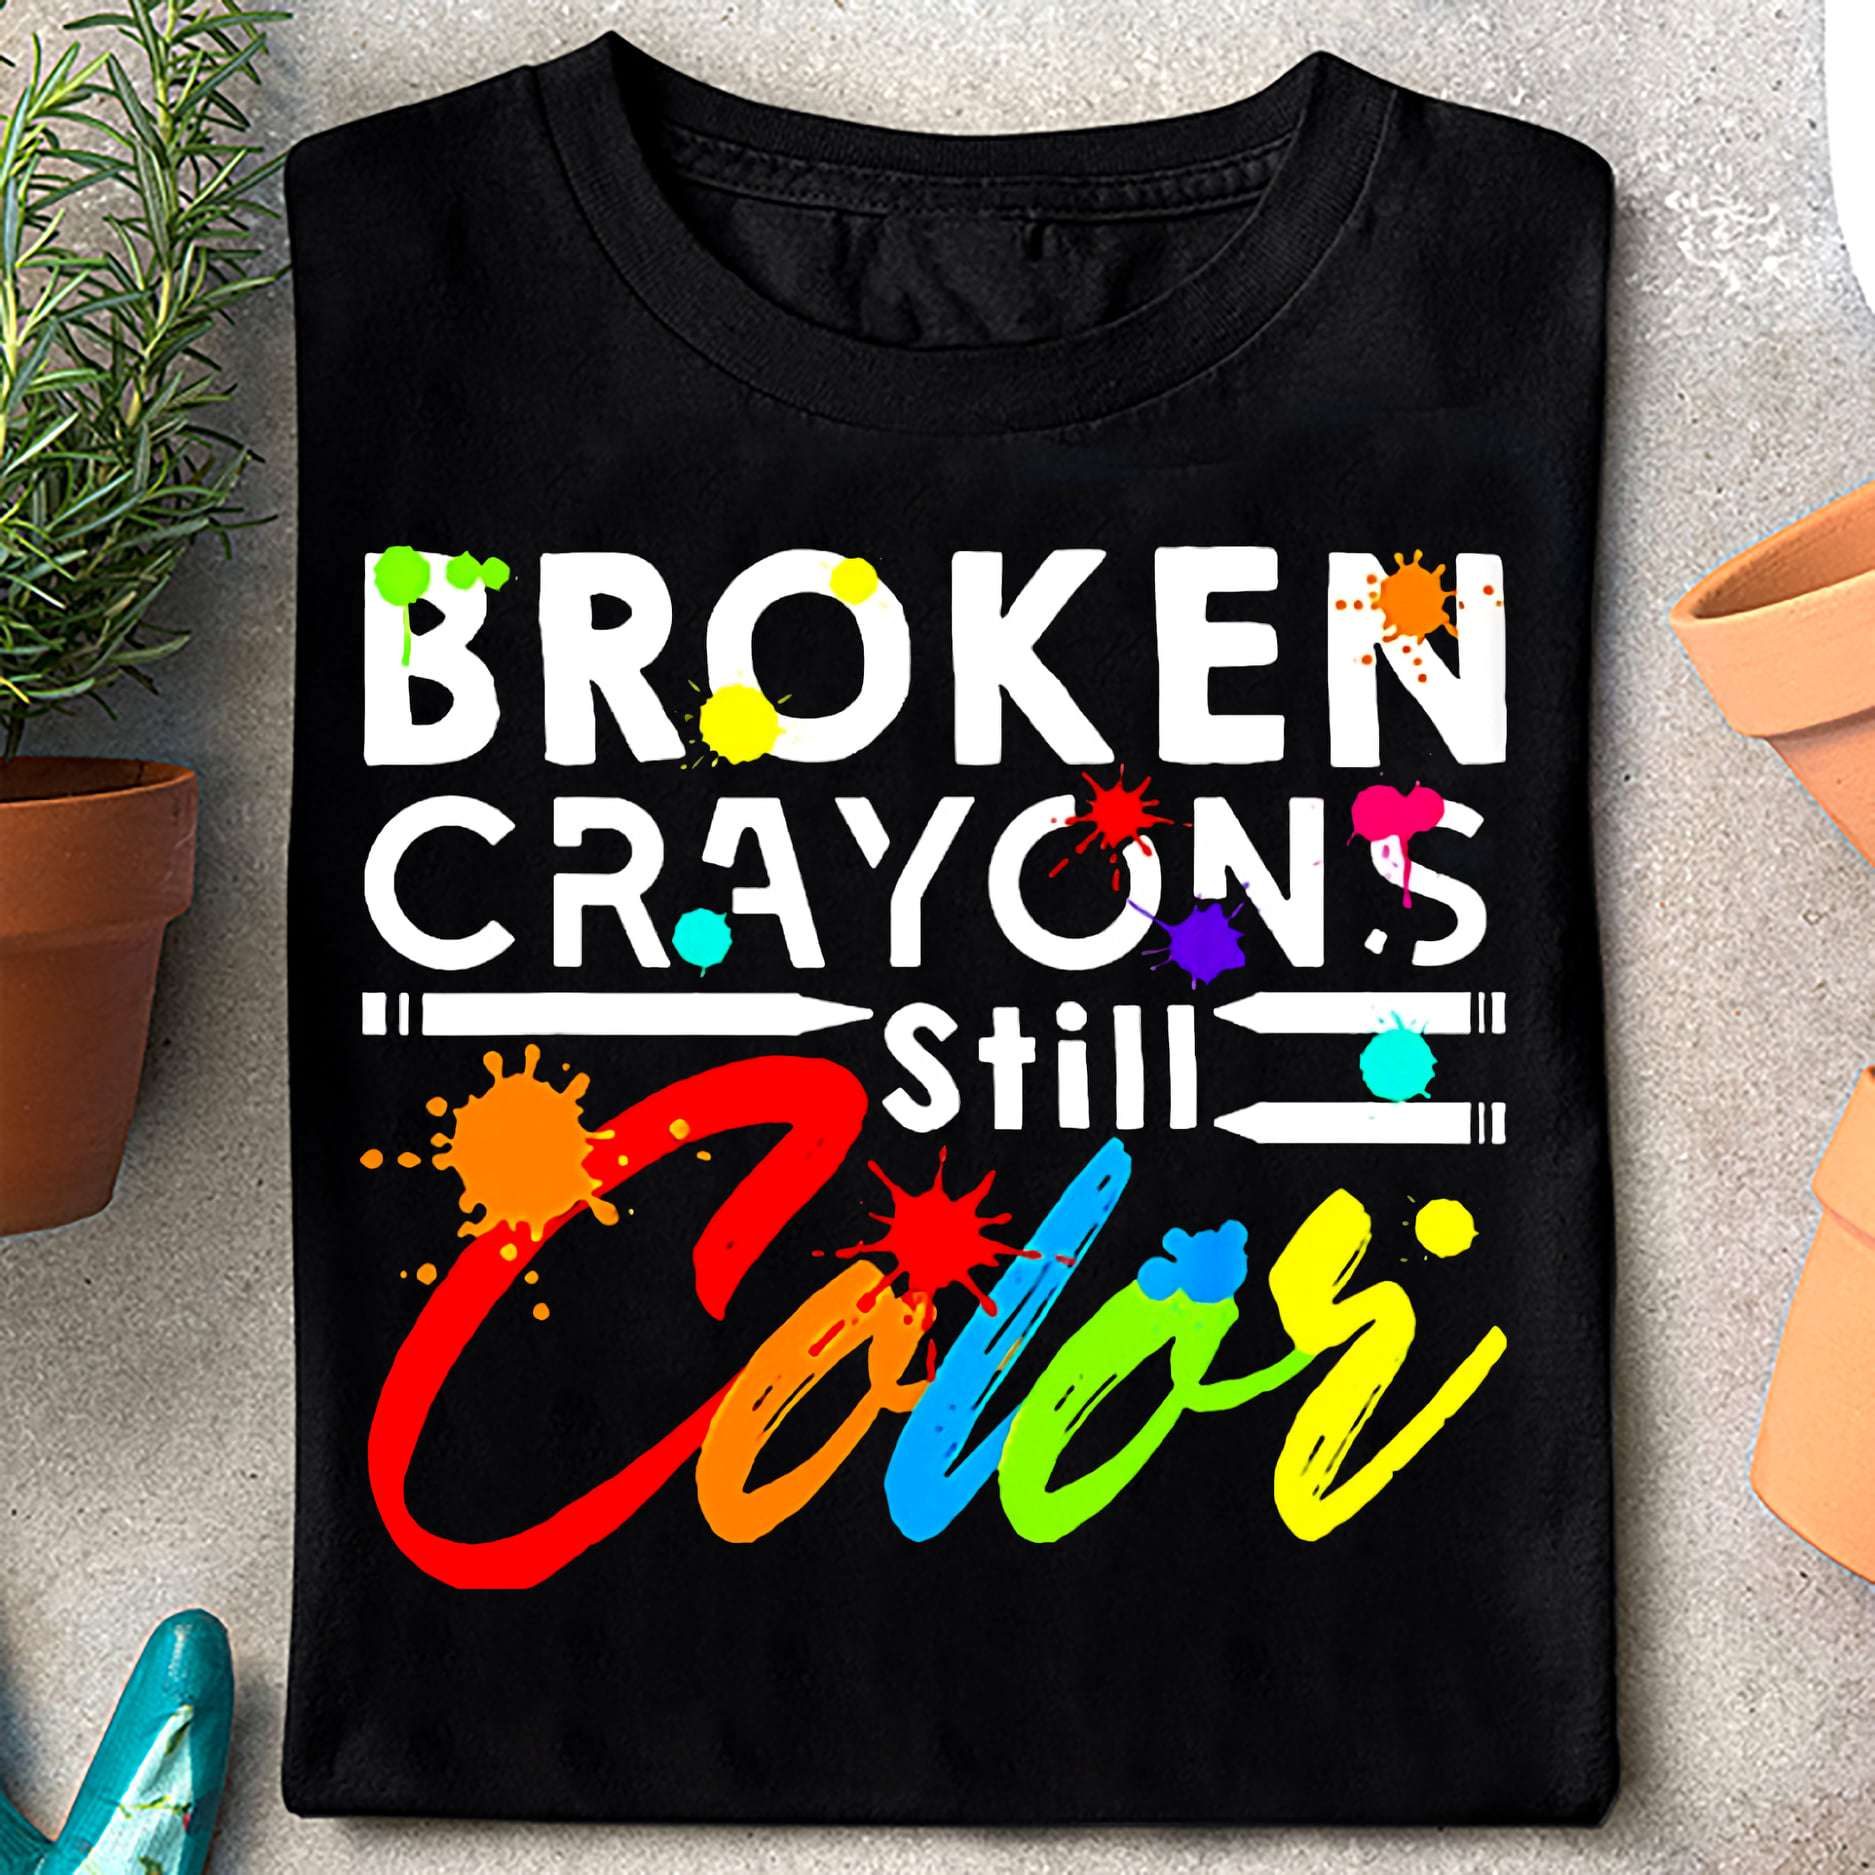 Broken crayons still color - Crayons make color, colorful crayons